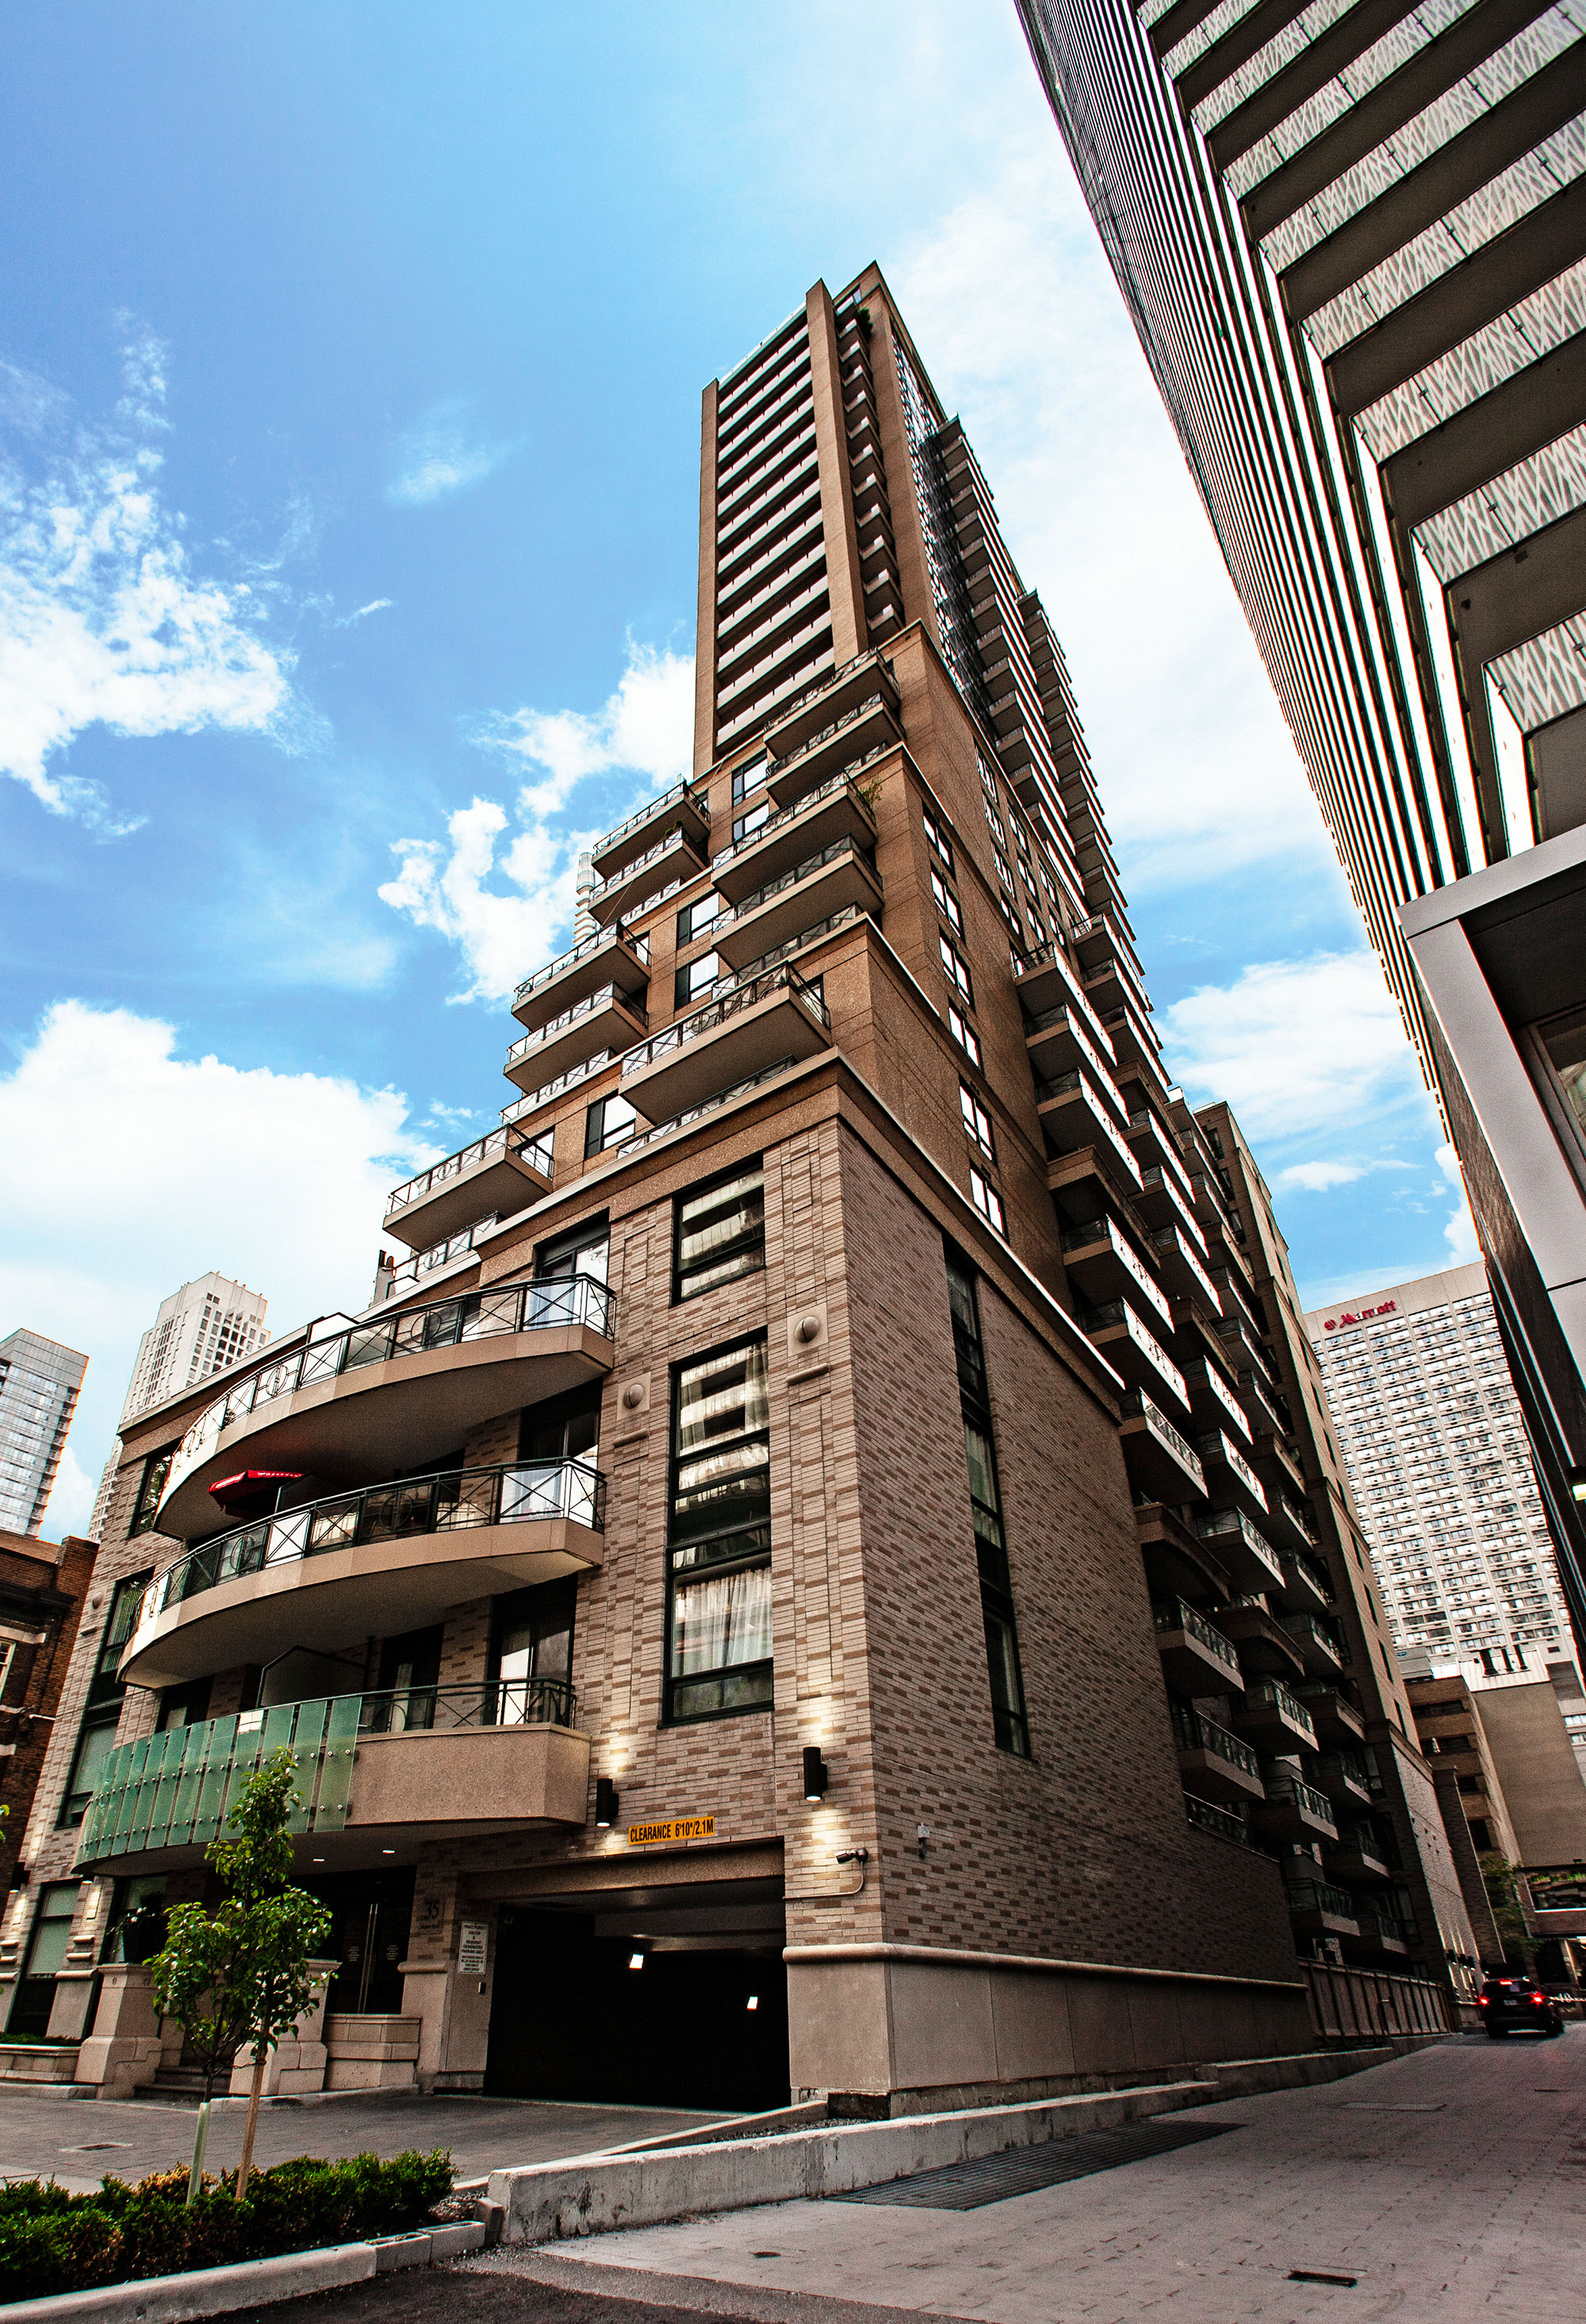 26 storey, 310 suite condominium with 4 levels of underground parking.